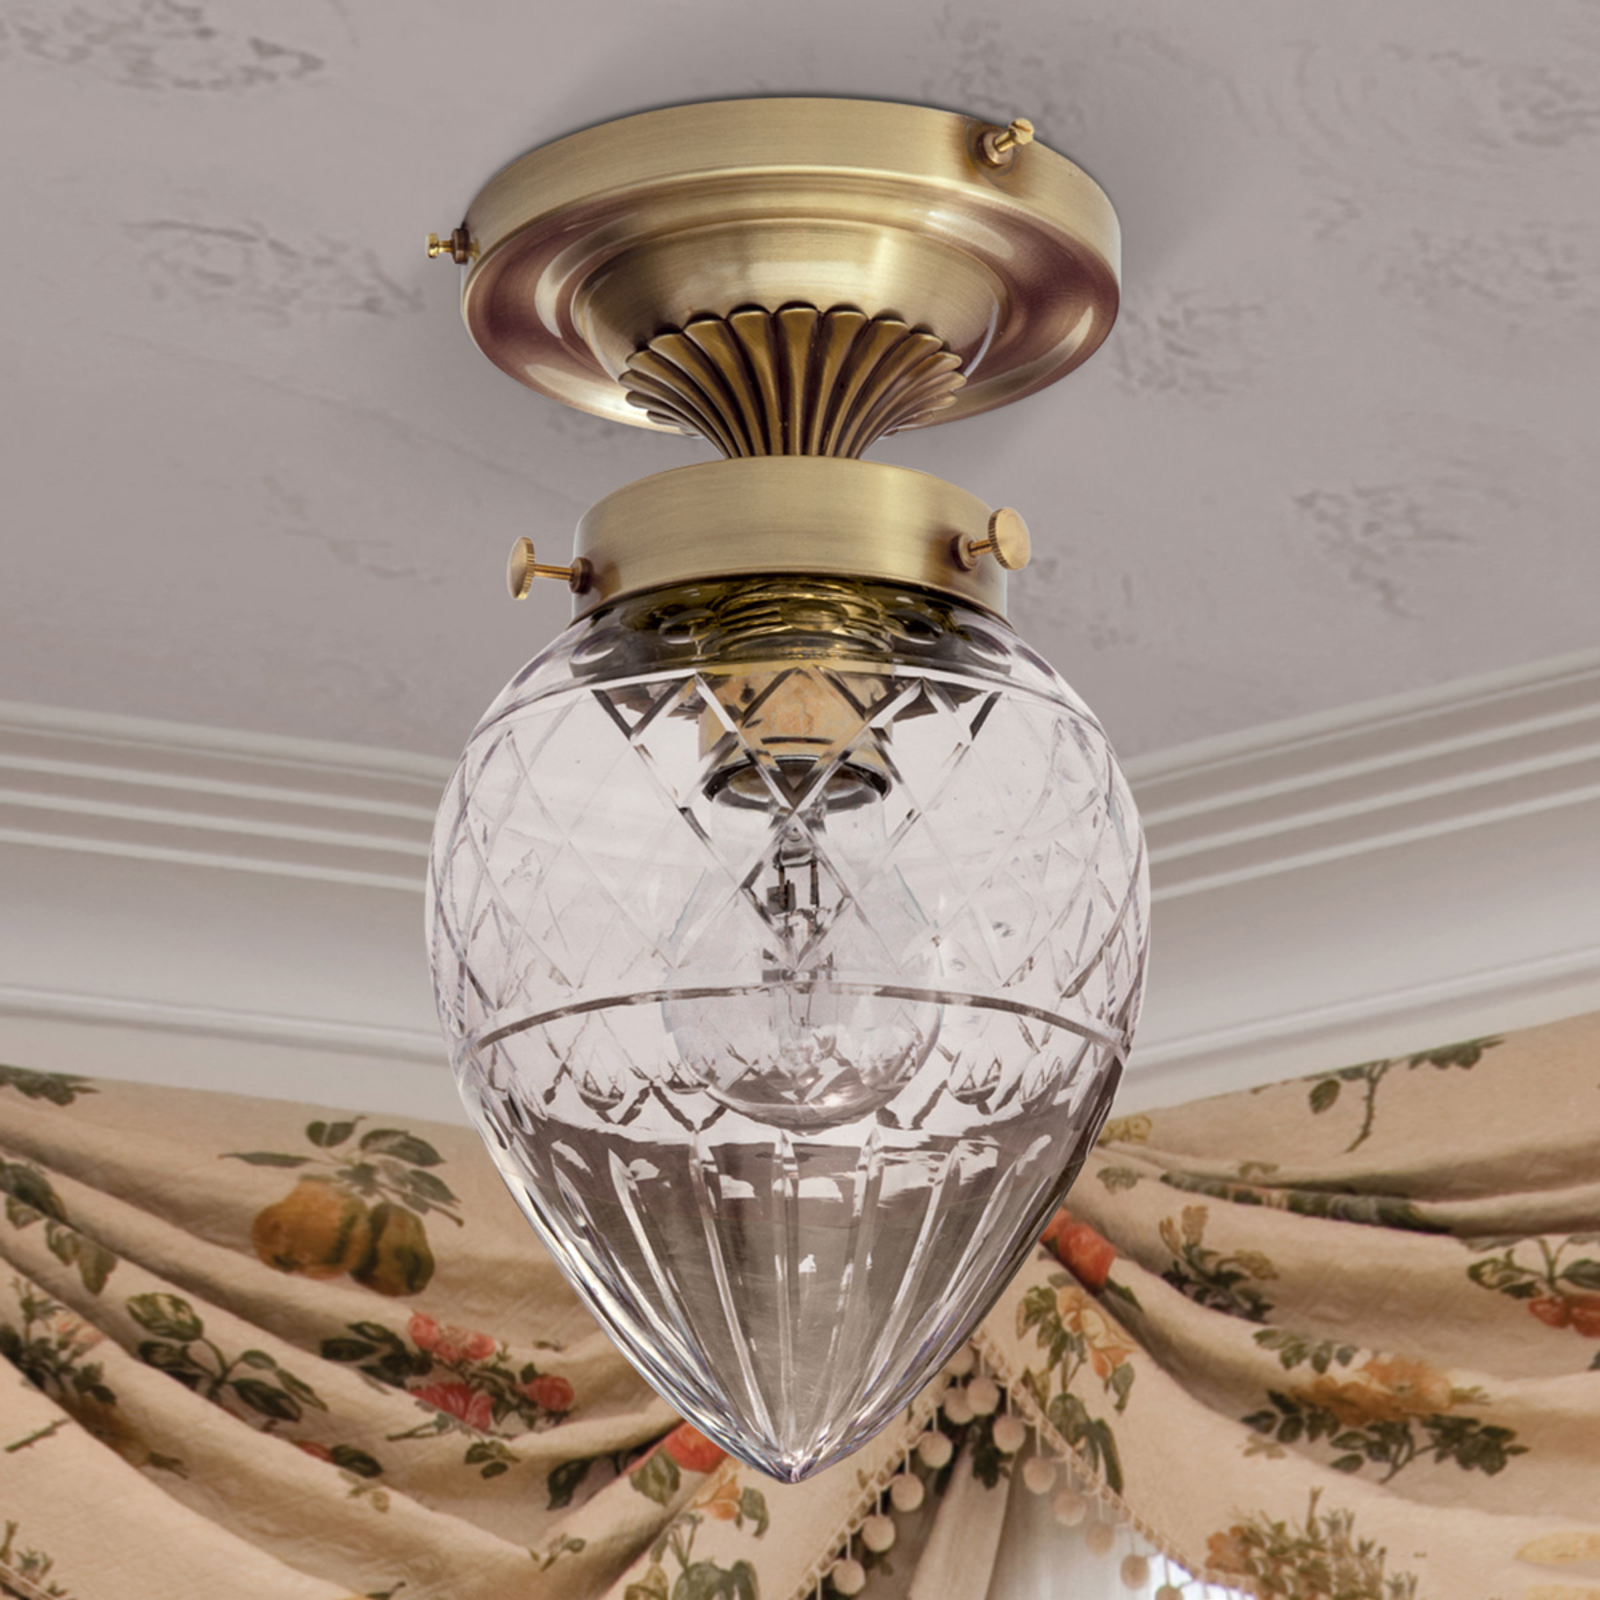 Enna Ceiling Light Small Single Bulb